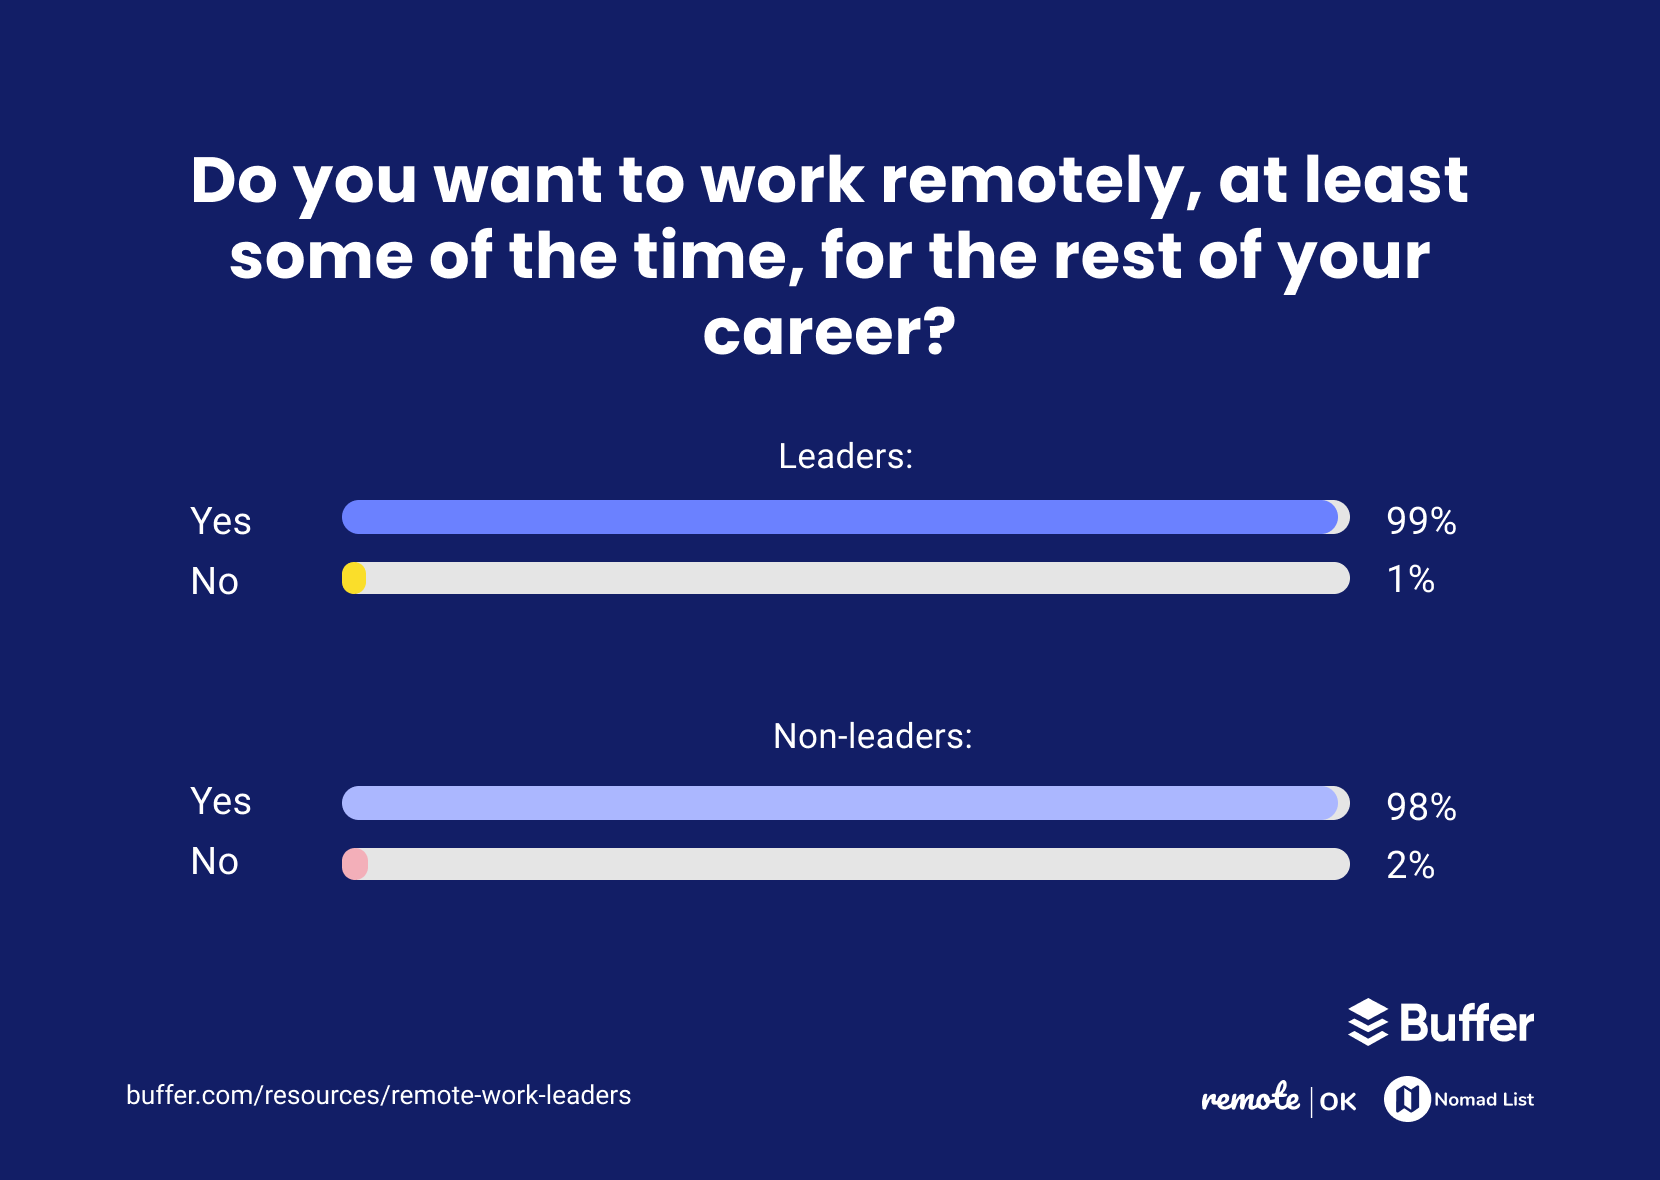 WorkRemotelyCareer - How Are Leaders Experiencing Remote Work?